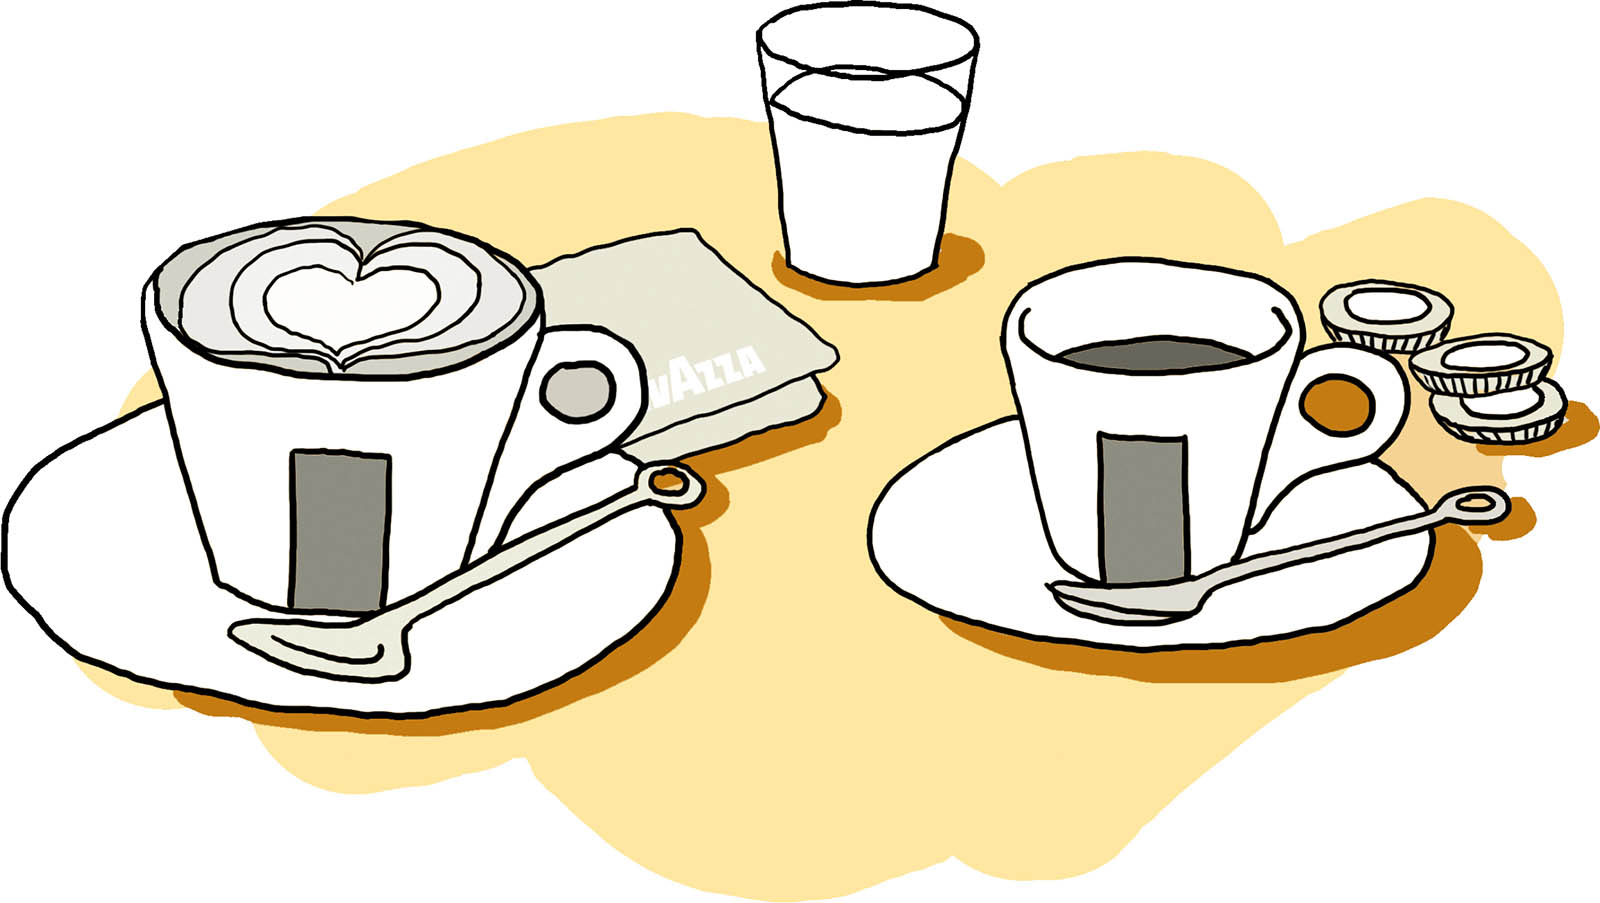 Lavazza coffee and cappuccino illustration